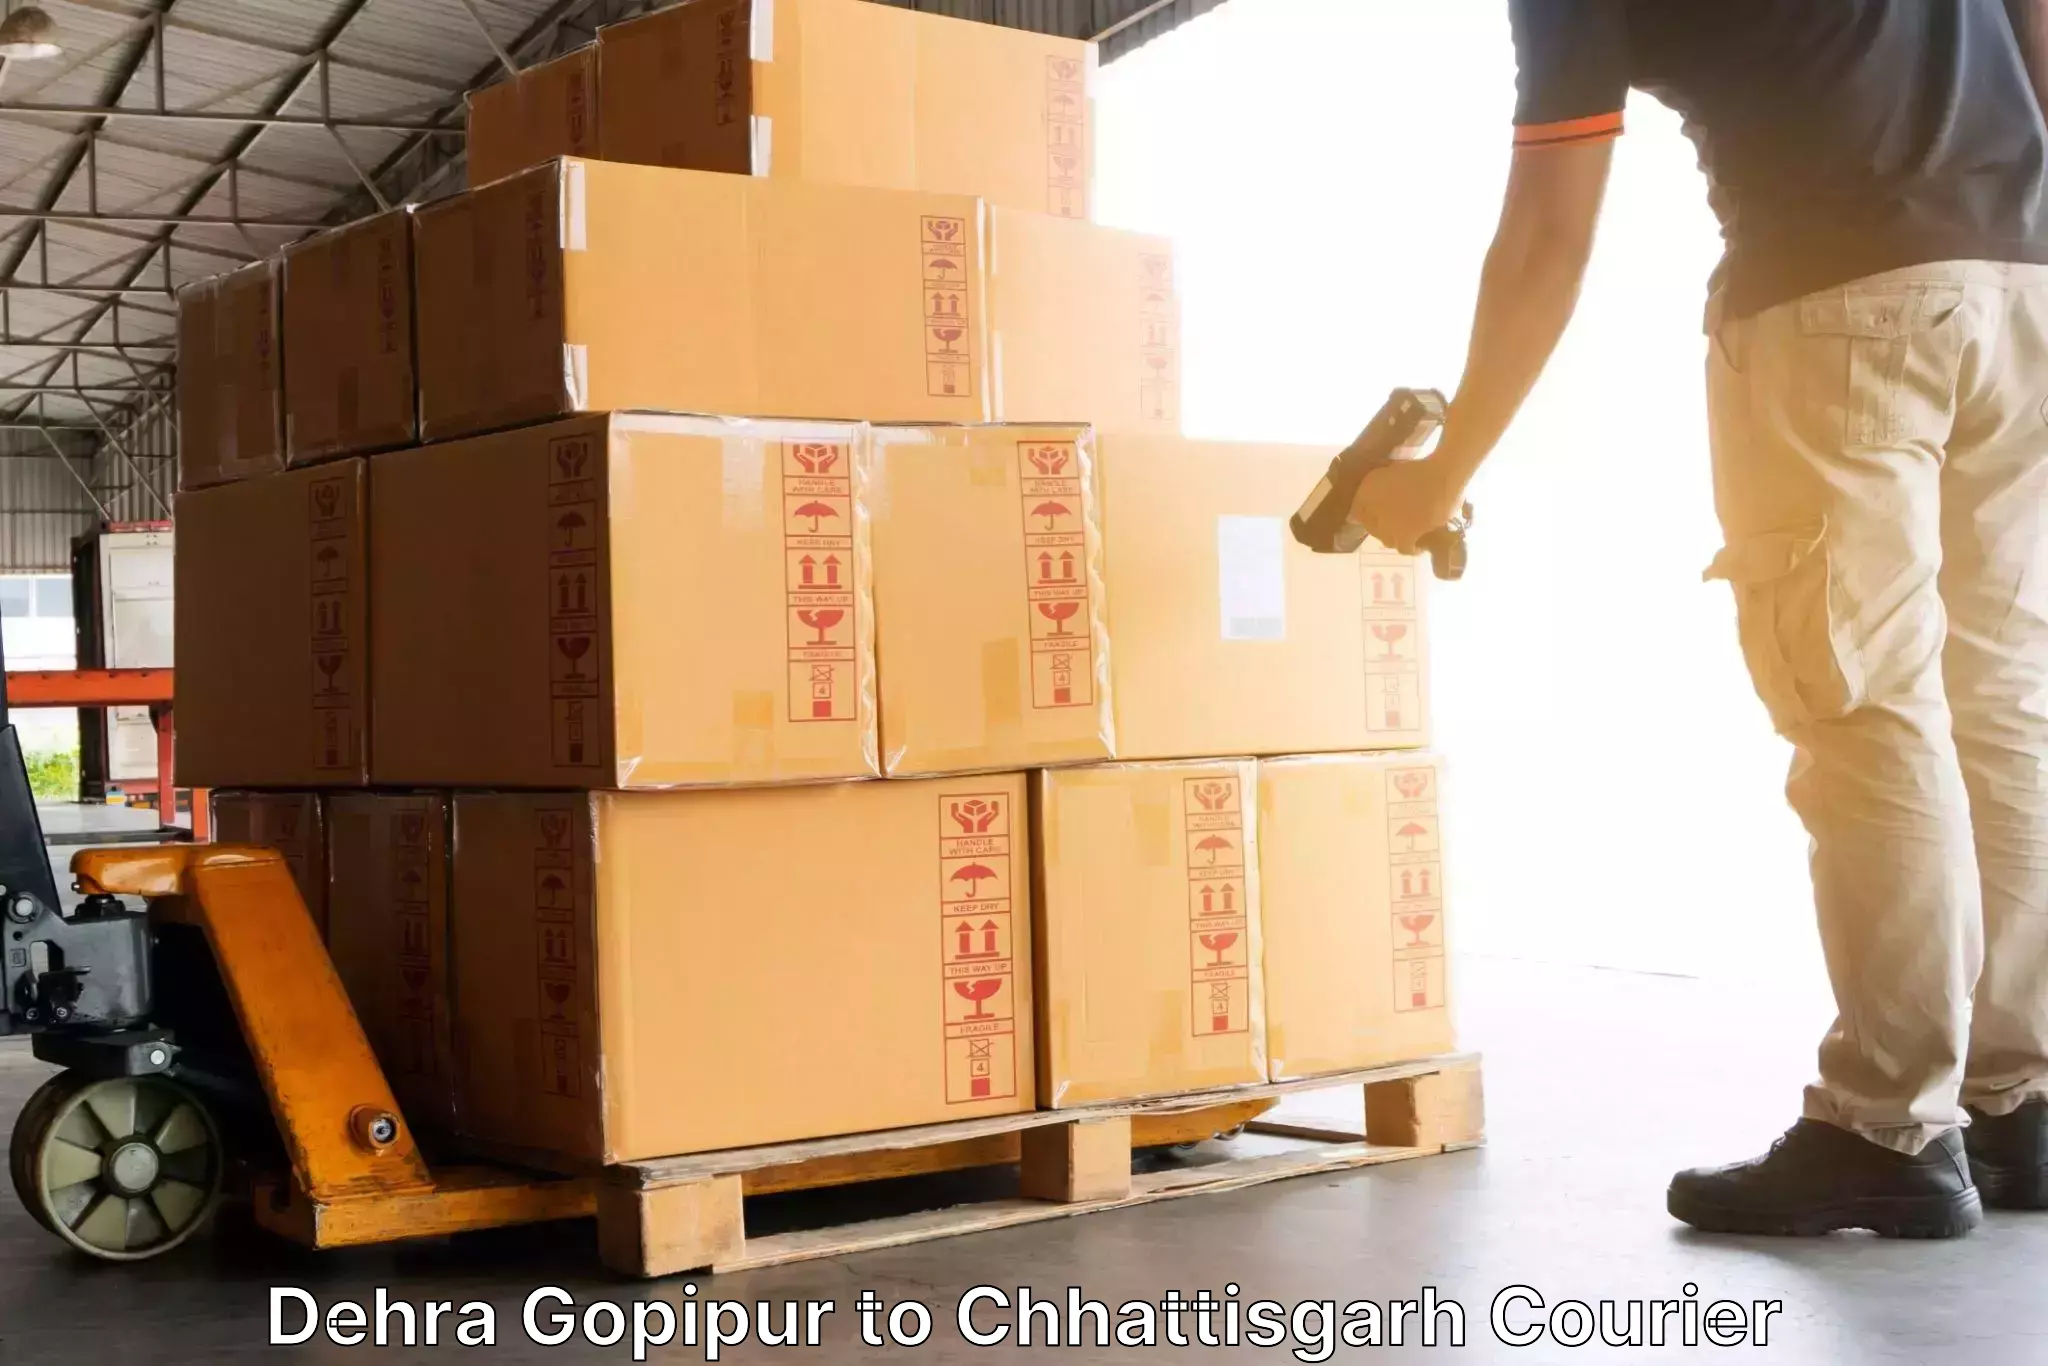 Next-day freight services Dehra Gopipur to Jagdalpur